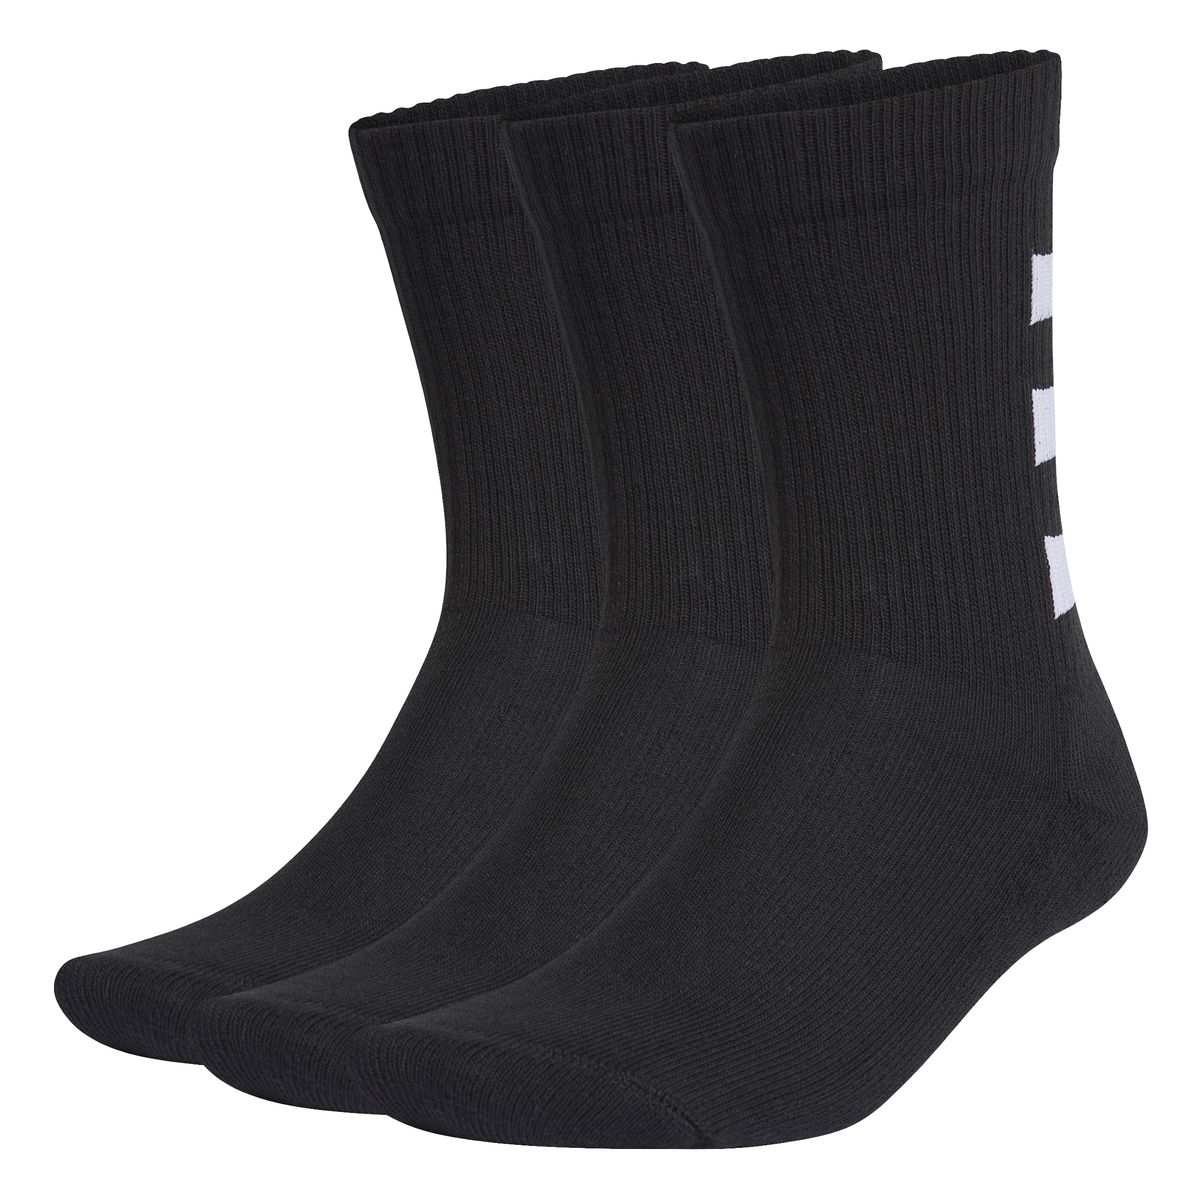 Adidas 3-Streifen Half-Cushioned Crew Socken, 3 Paar Unisex